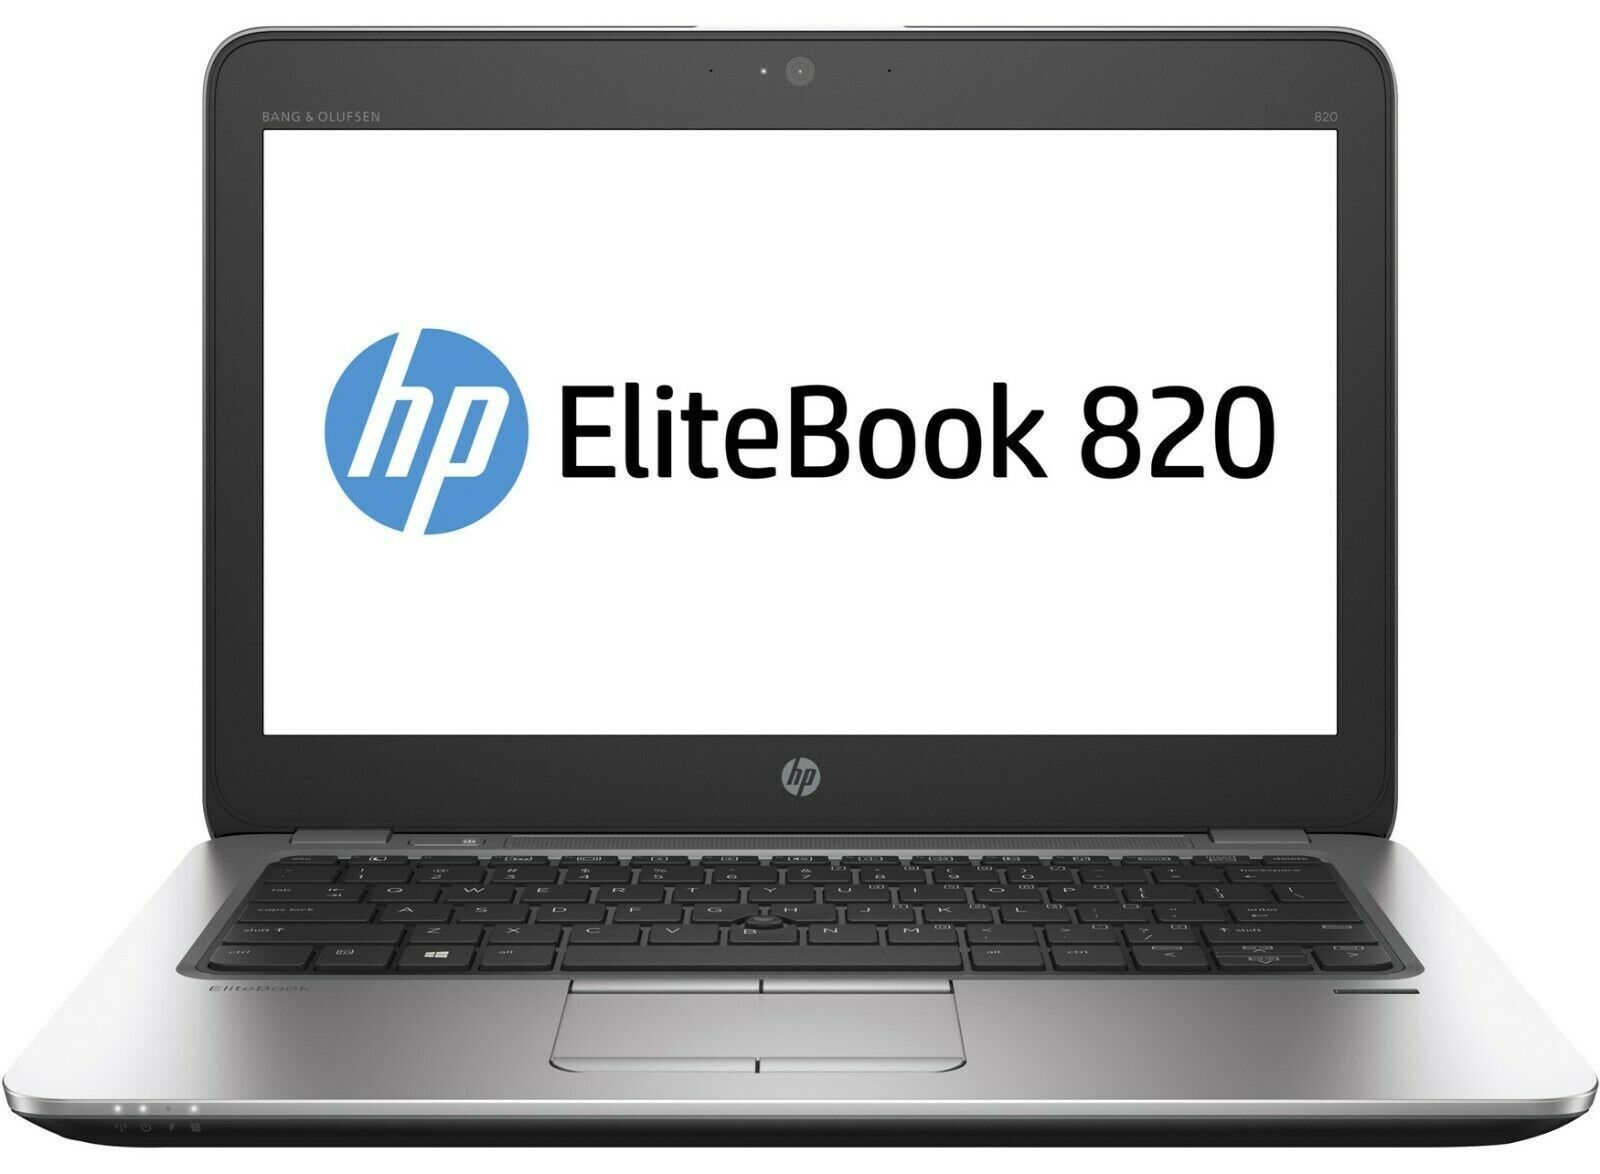 HP EliteBook 820 G3 Intel i7 6600U 2.60Ghz 16GB RAM 256GB SSD 12.5" Win 10 - B Grade